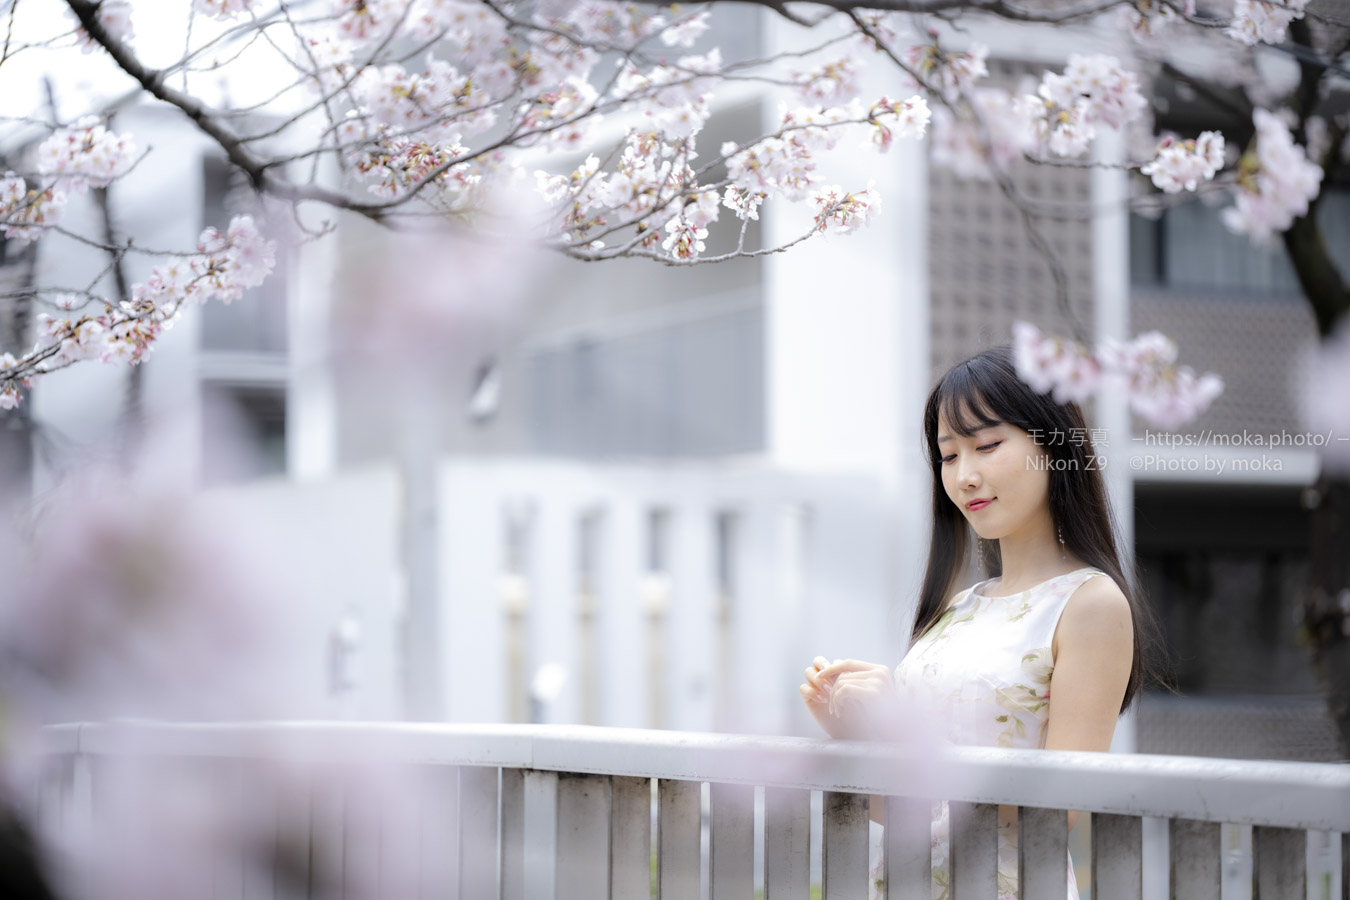 【ポートレート撮影】桜の季節に、あなたは何を想ふ。